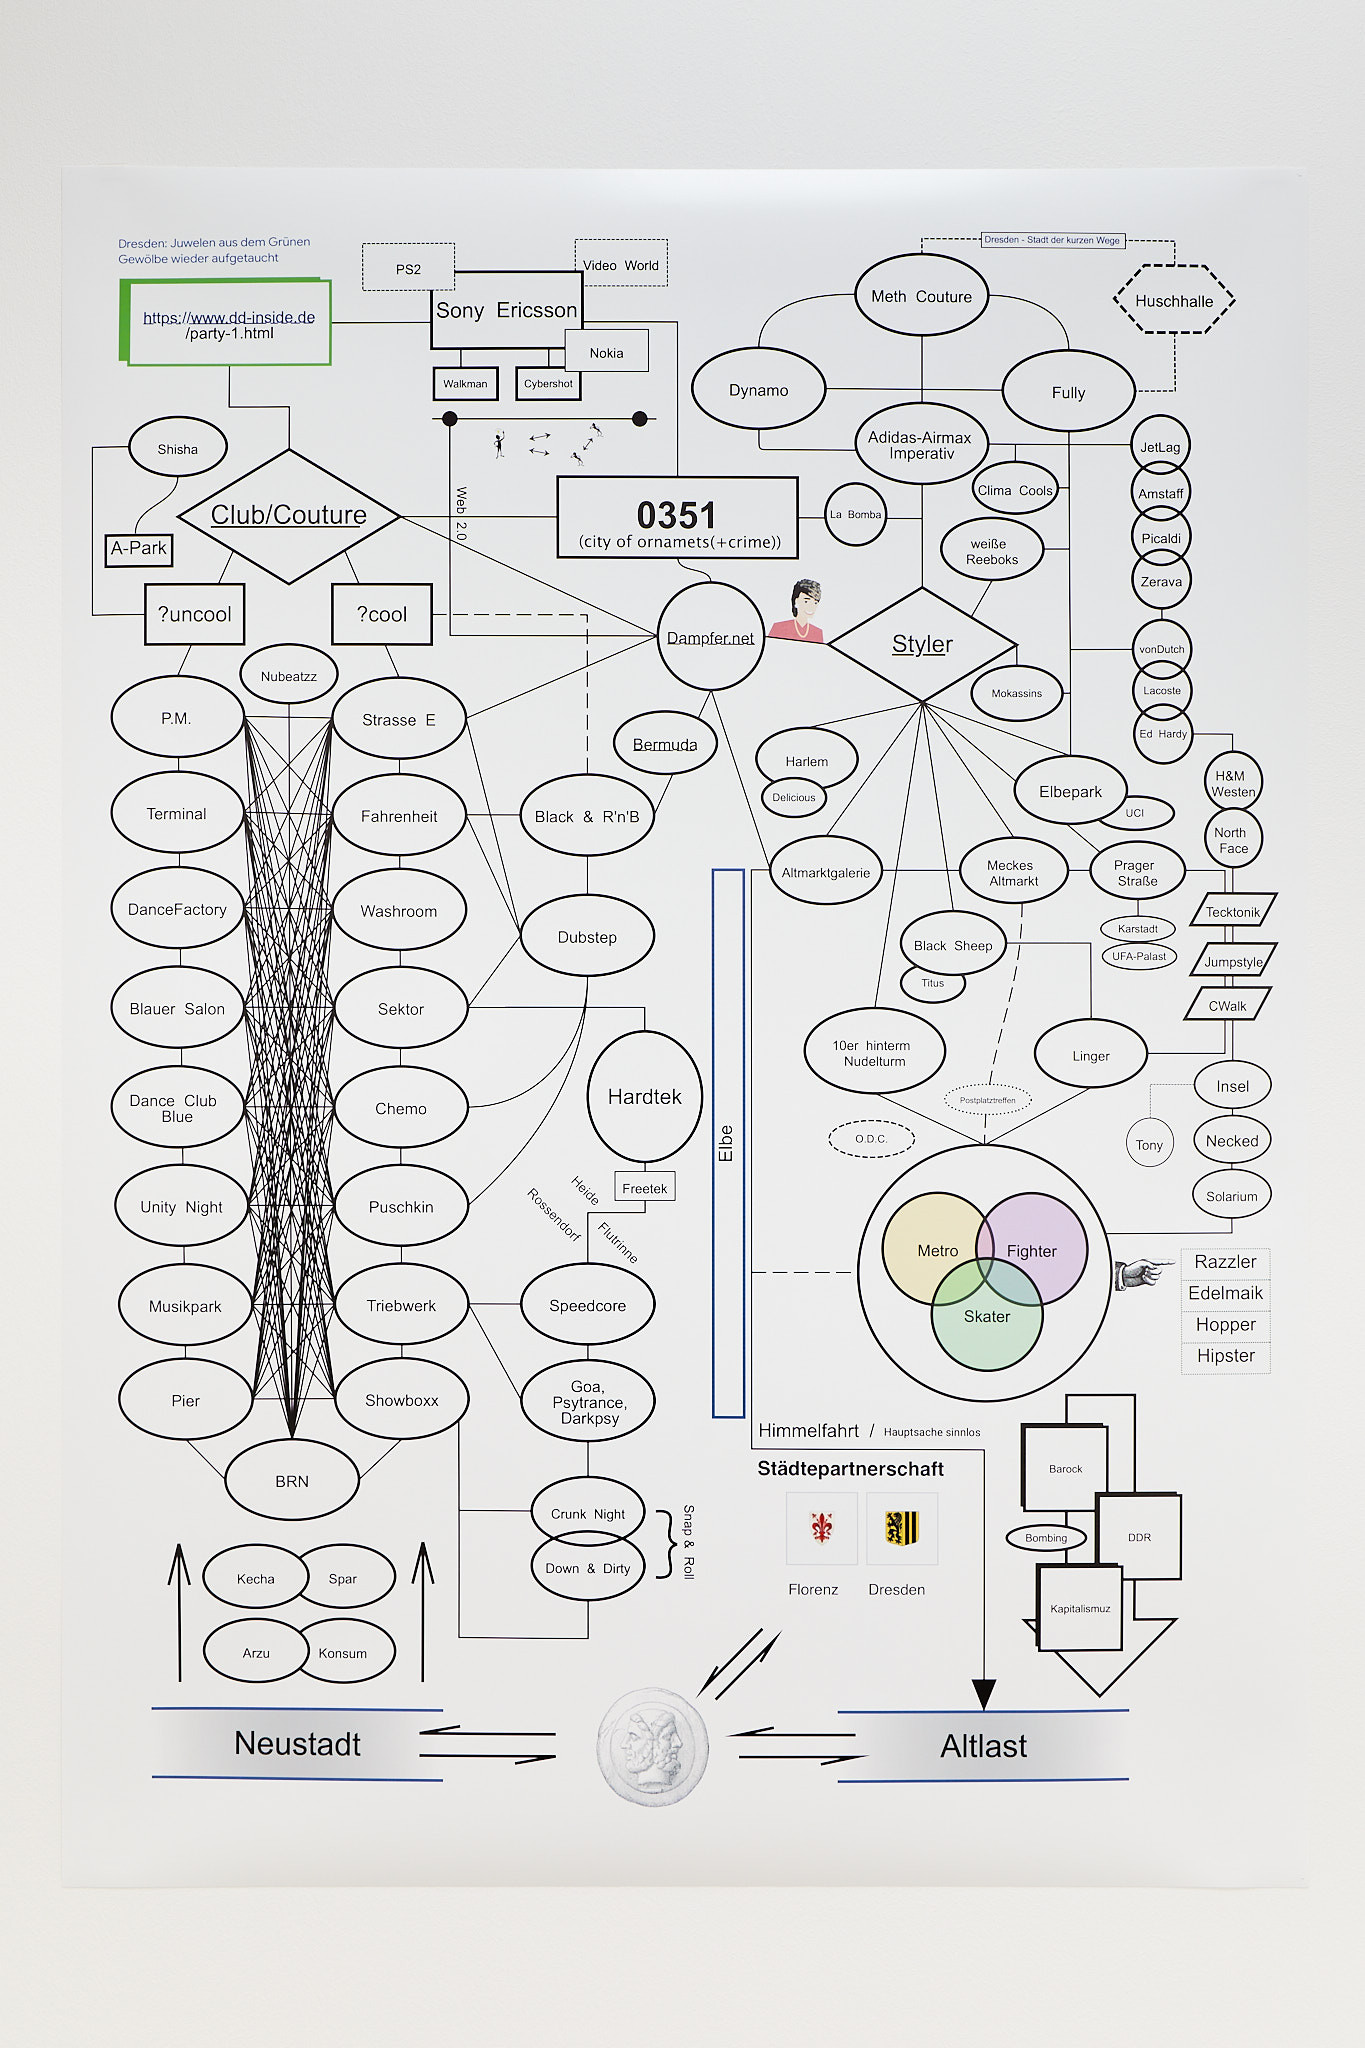 Manuel Sékou, ILMG Psychogramm, C-Print